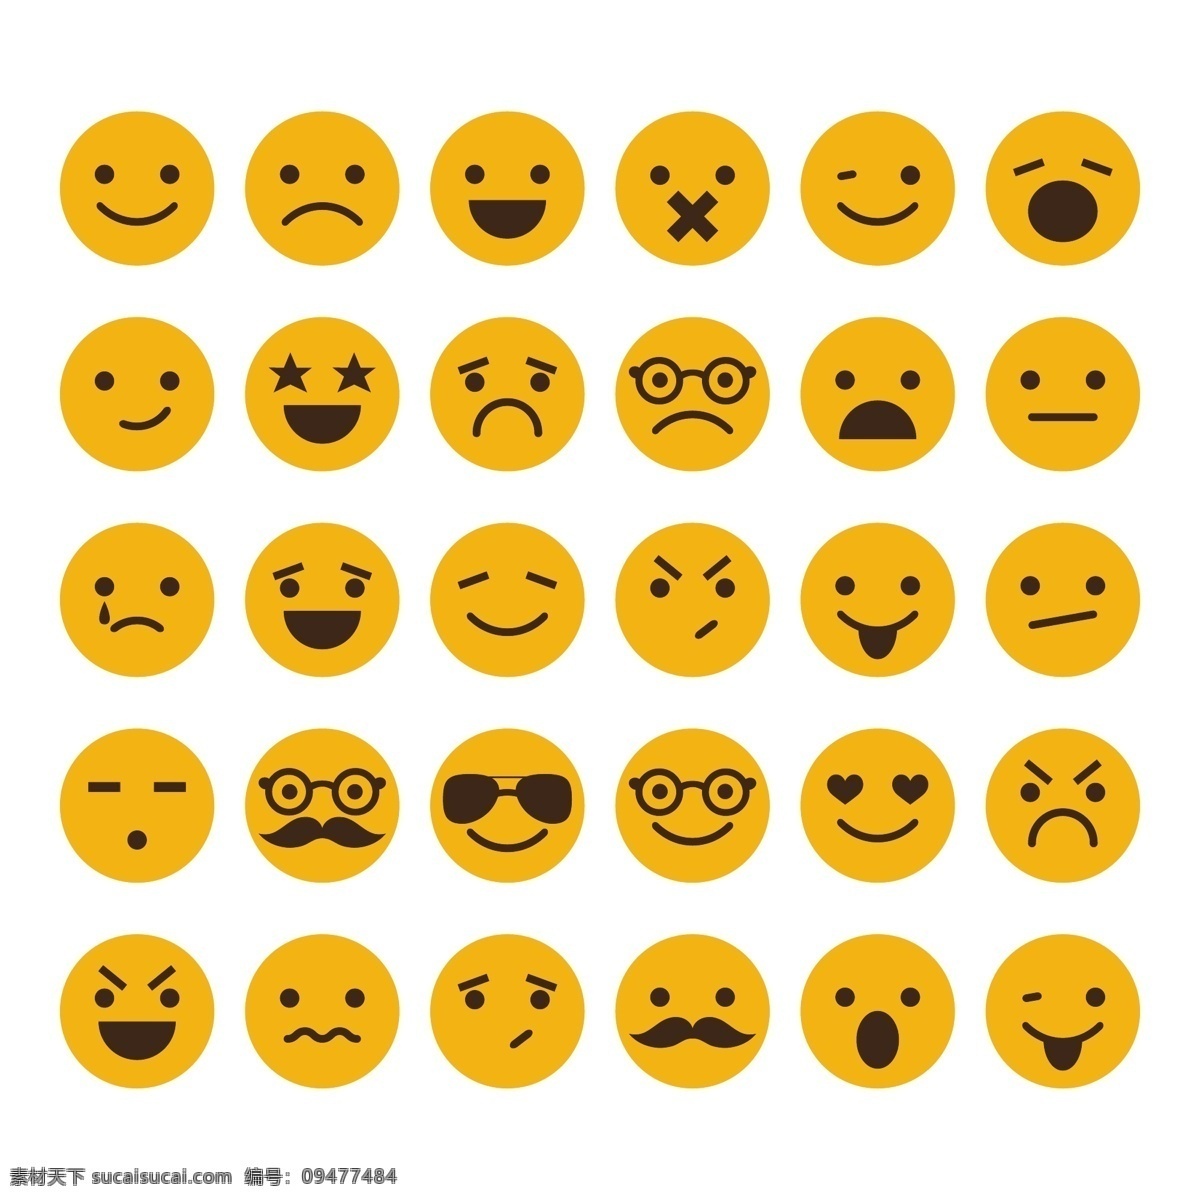 可爱卡通圆形 表情图标 qq表情 手机表情 笑脸表情 难过表情 生气表情 可爱表情